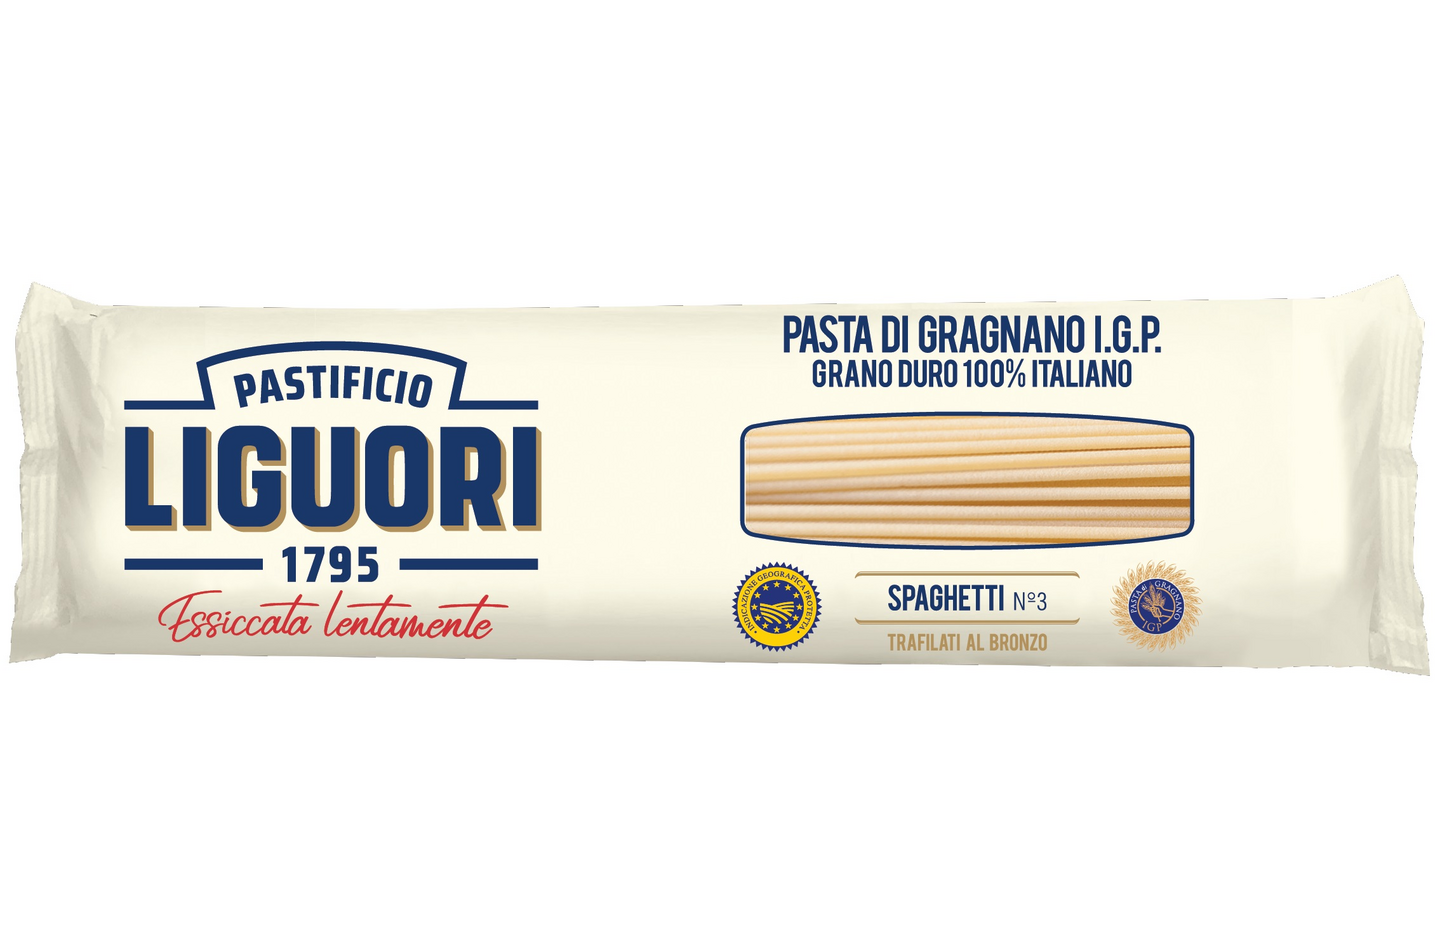 Liguori Pasta di Gragnano I.G.P. Spaghetti No.3 500g